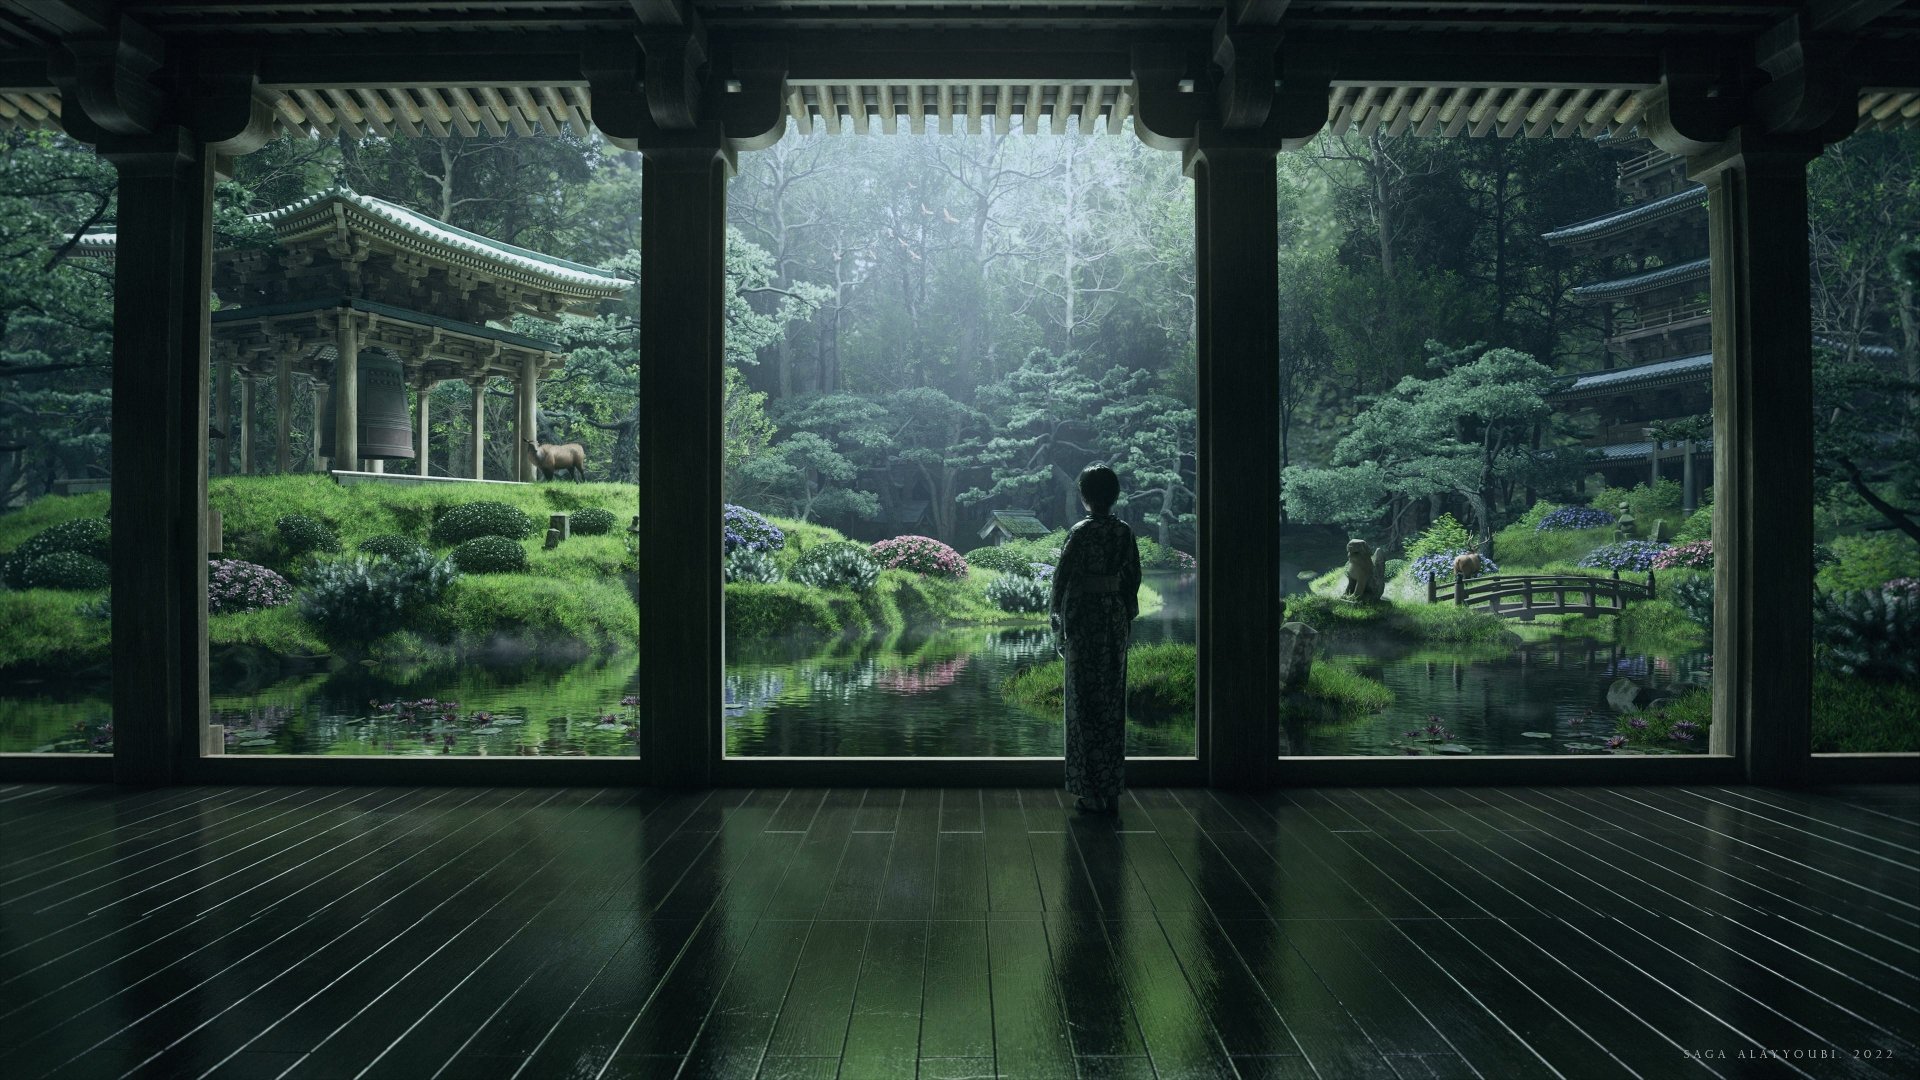 3840x2160 Zen Garden Wallpaper Background Image. 